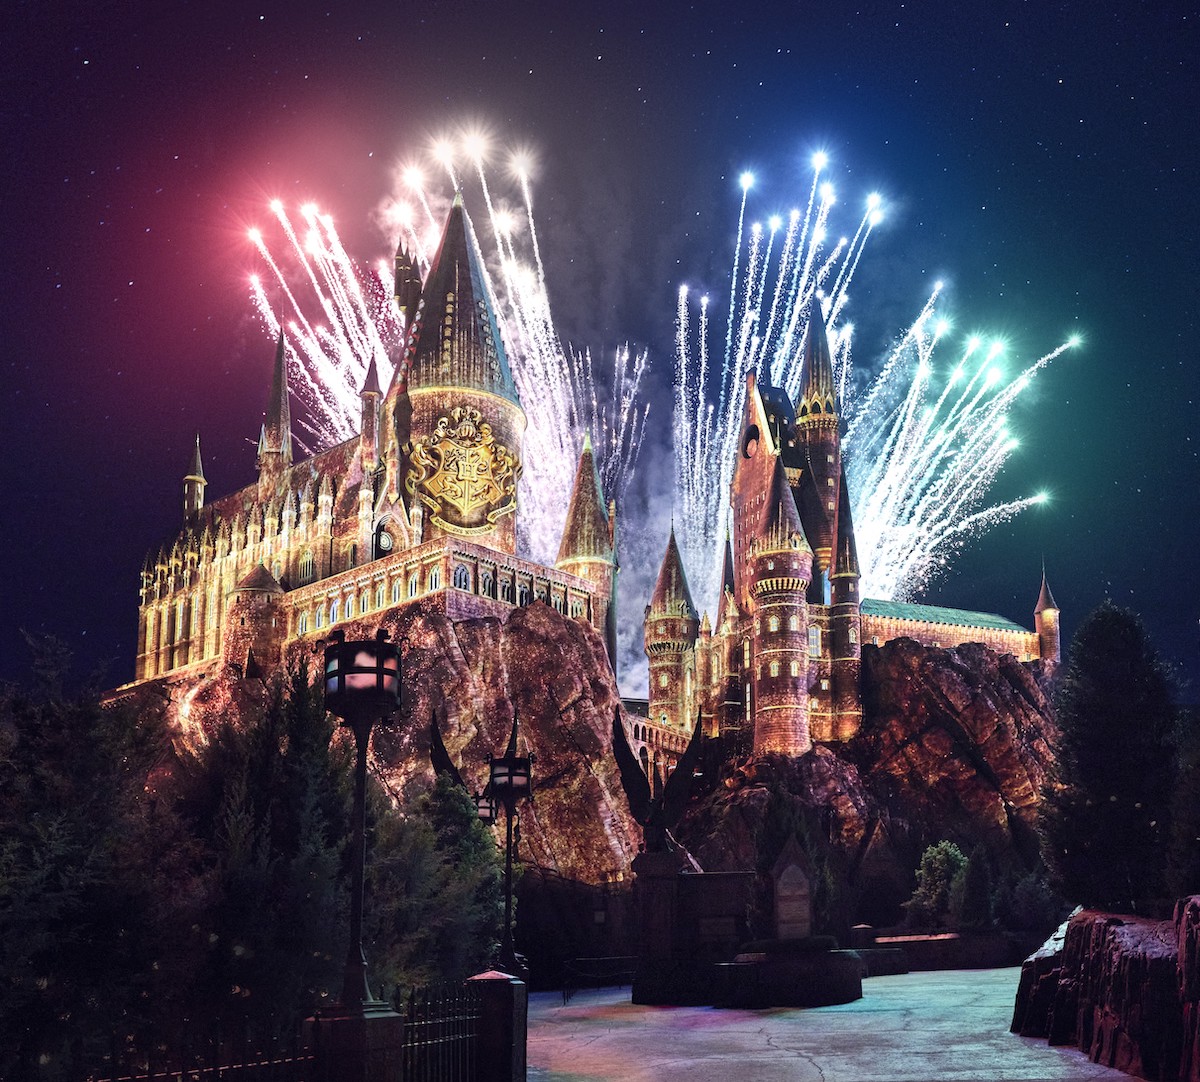 „Hogwarts Always“: Eine Neue Projektionsshow Verzaubert das Publikum in Hogsmeade